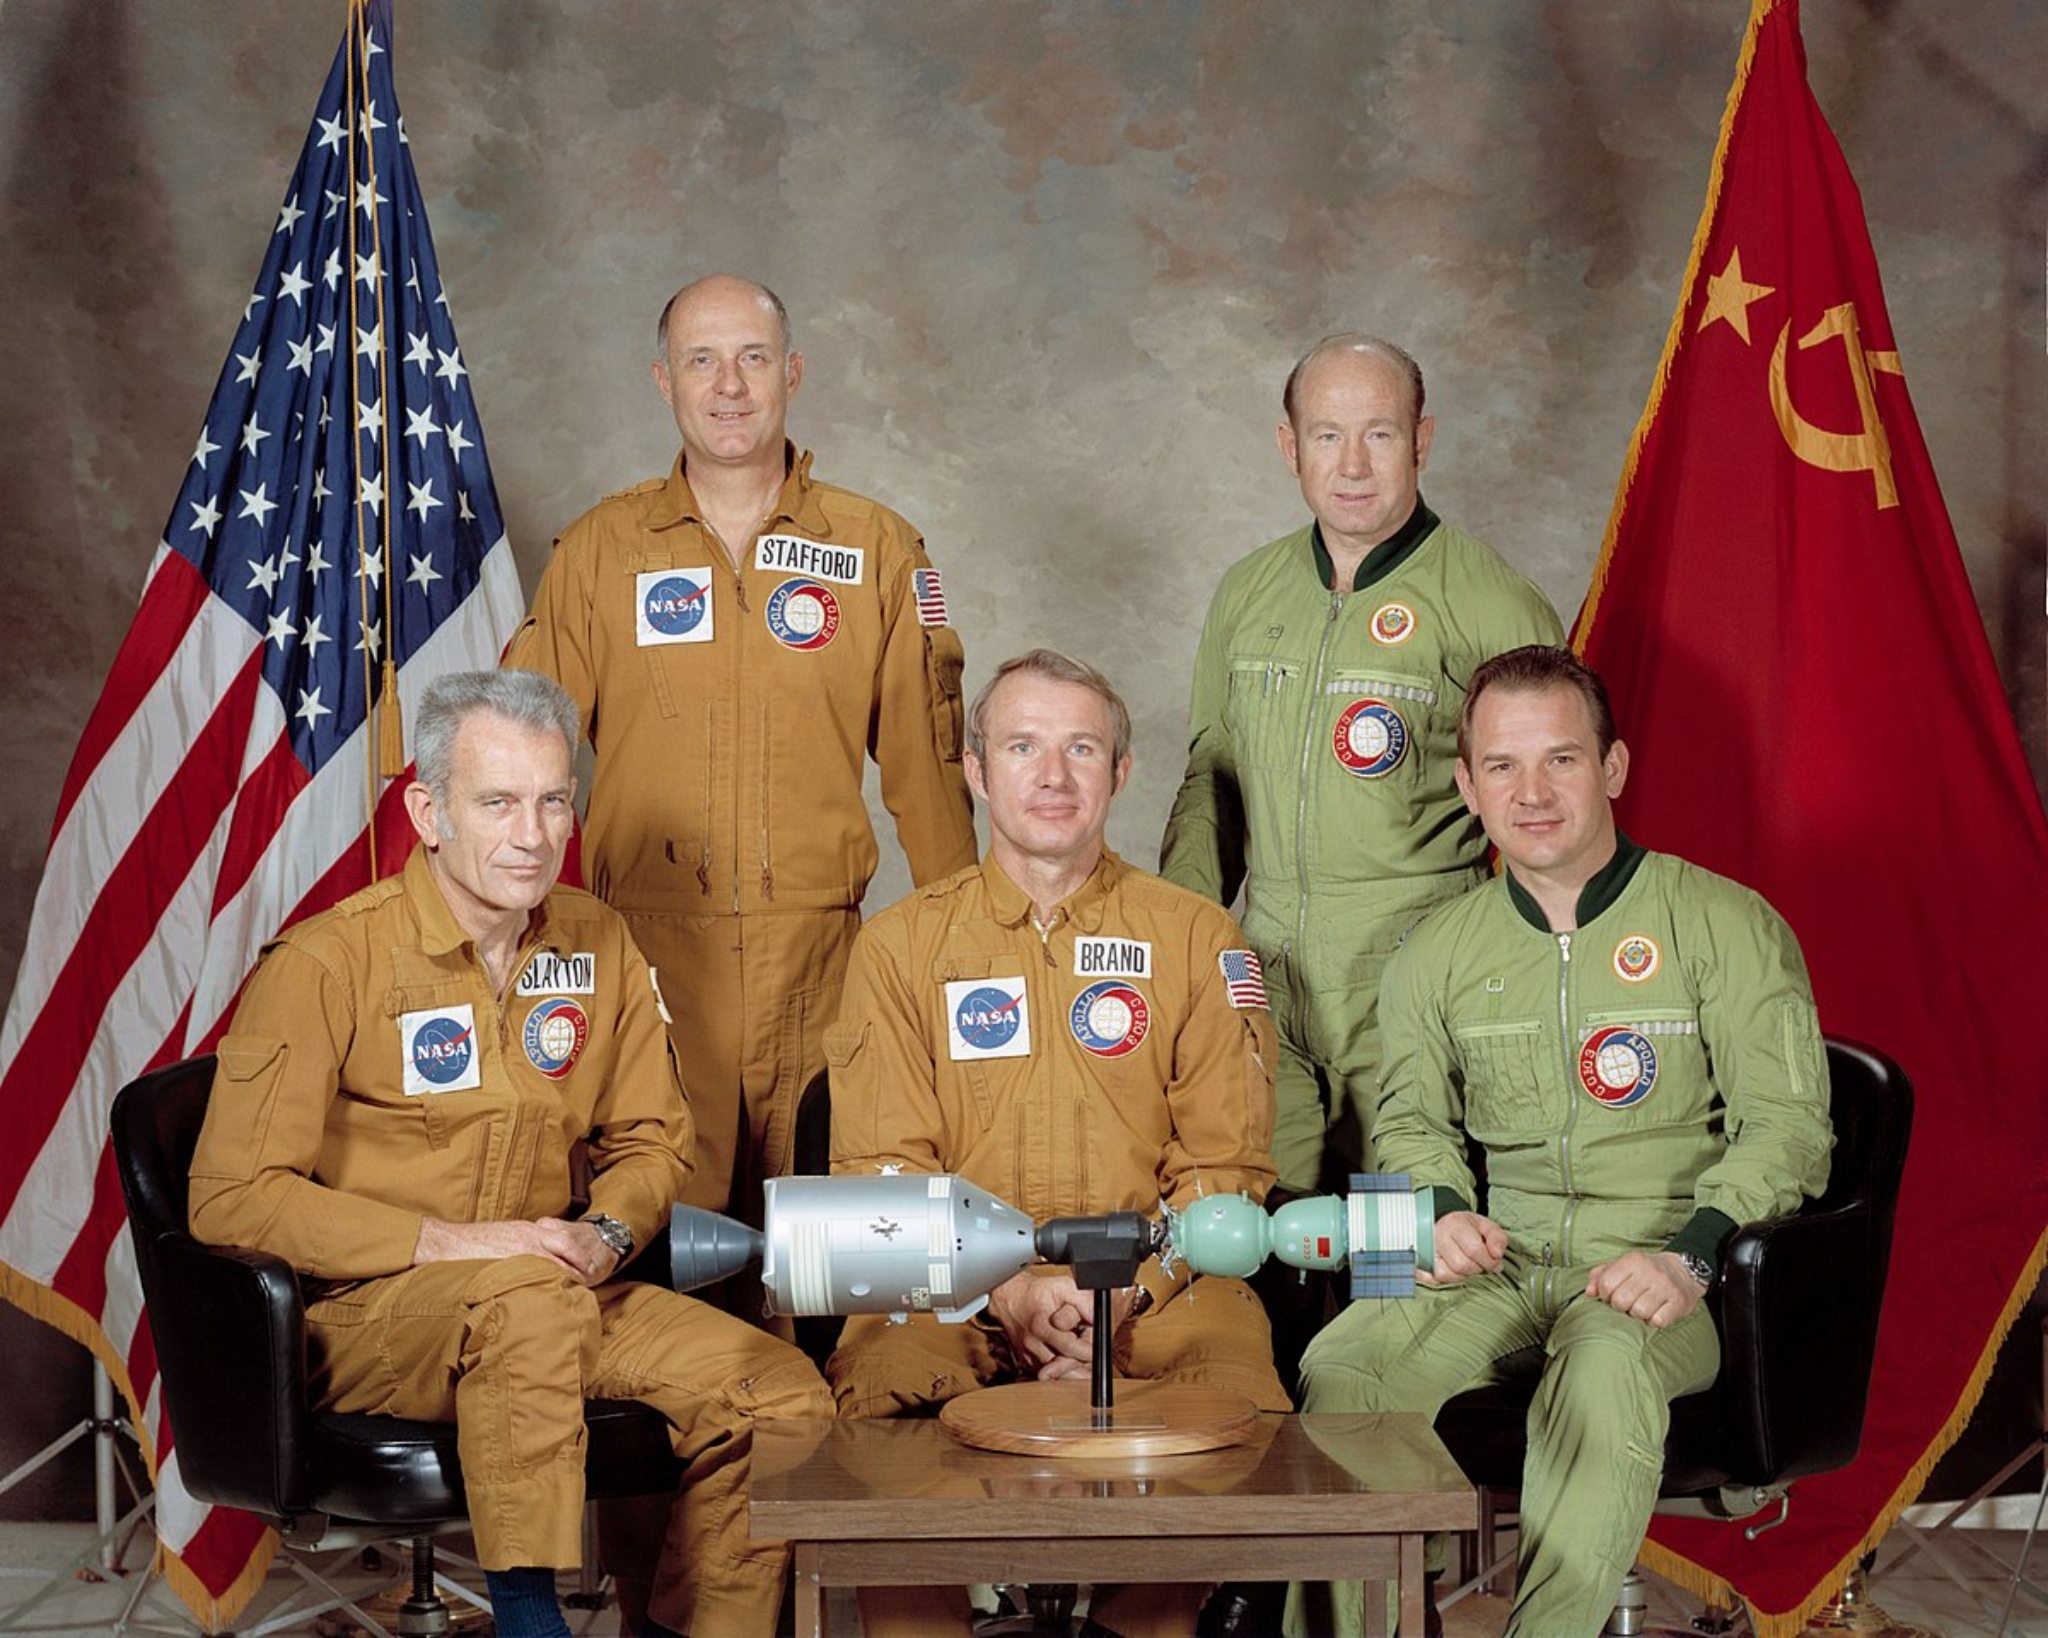 002 US USSR space.jpg